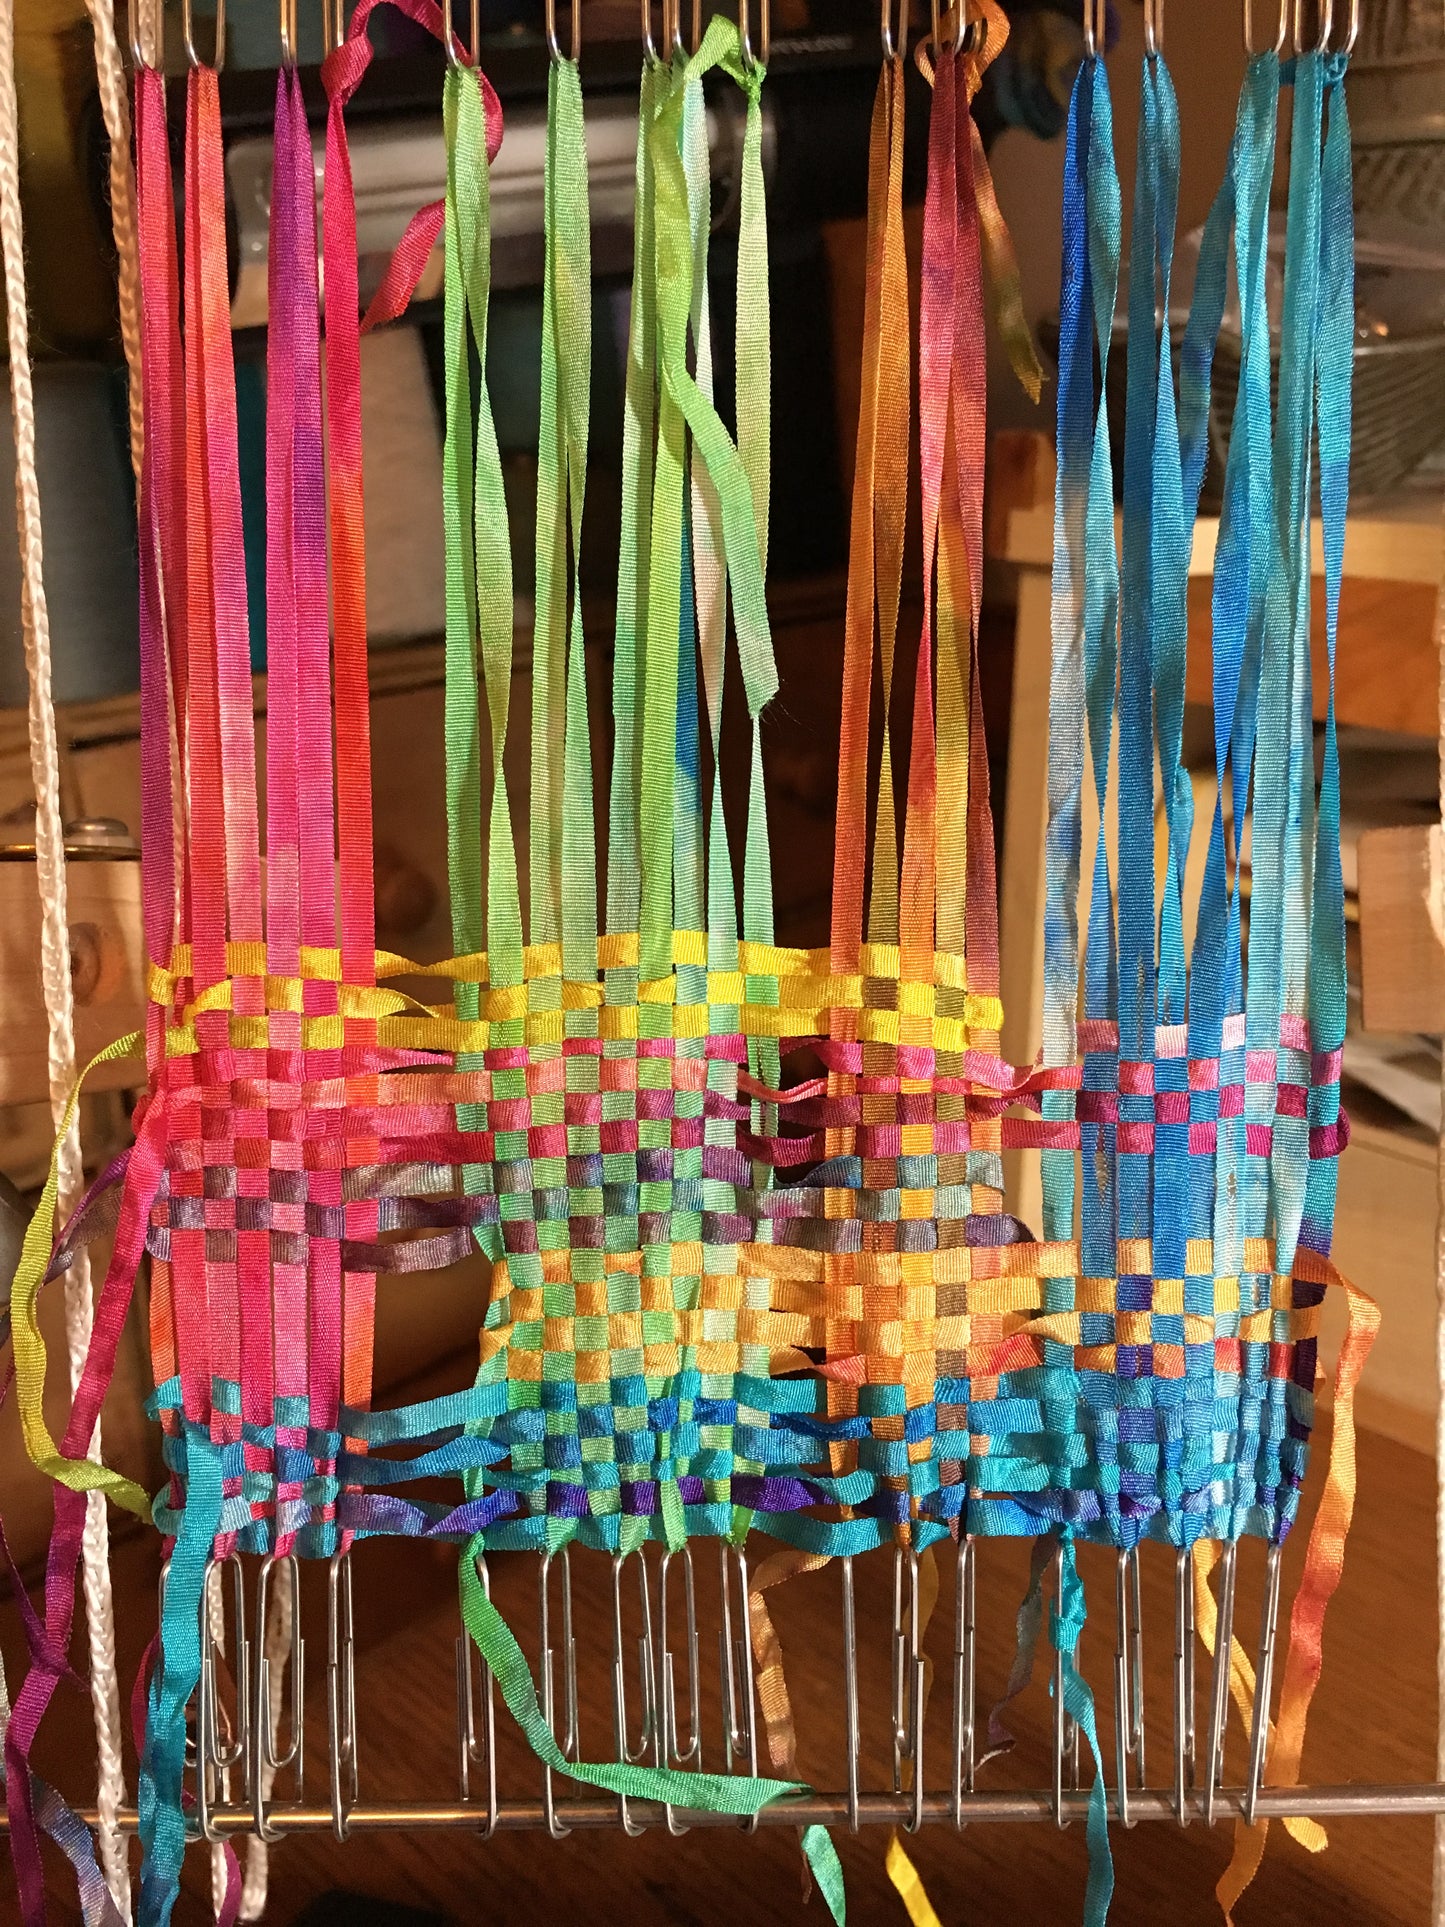 Guest Blog Post by Deb Bednarek: Weaving with Silk Ribbon